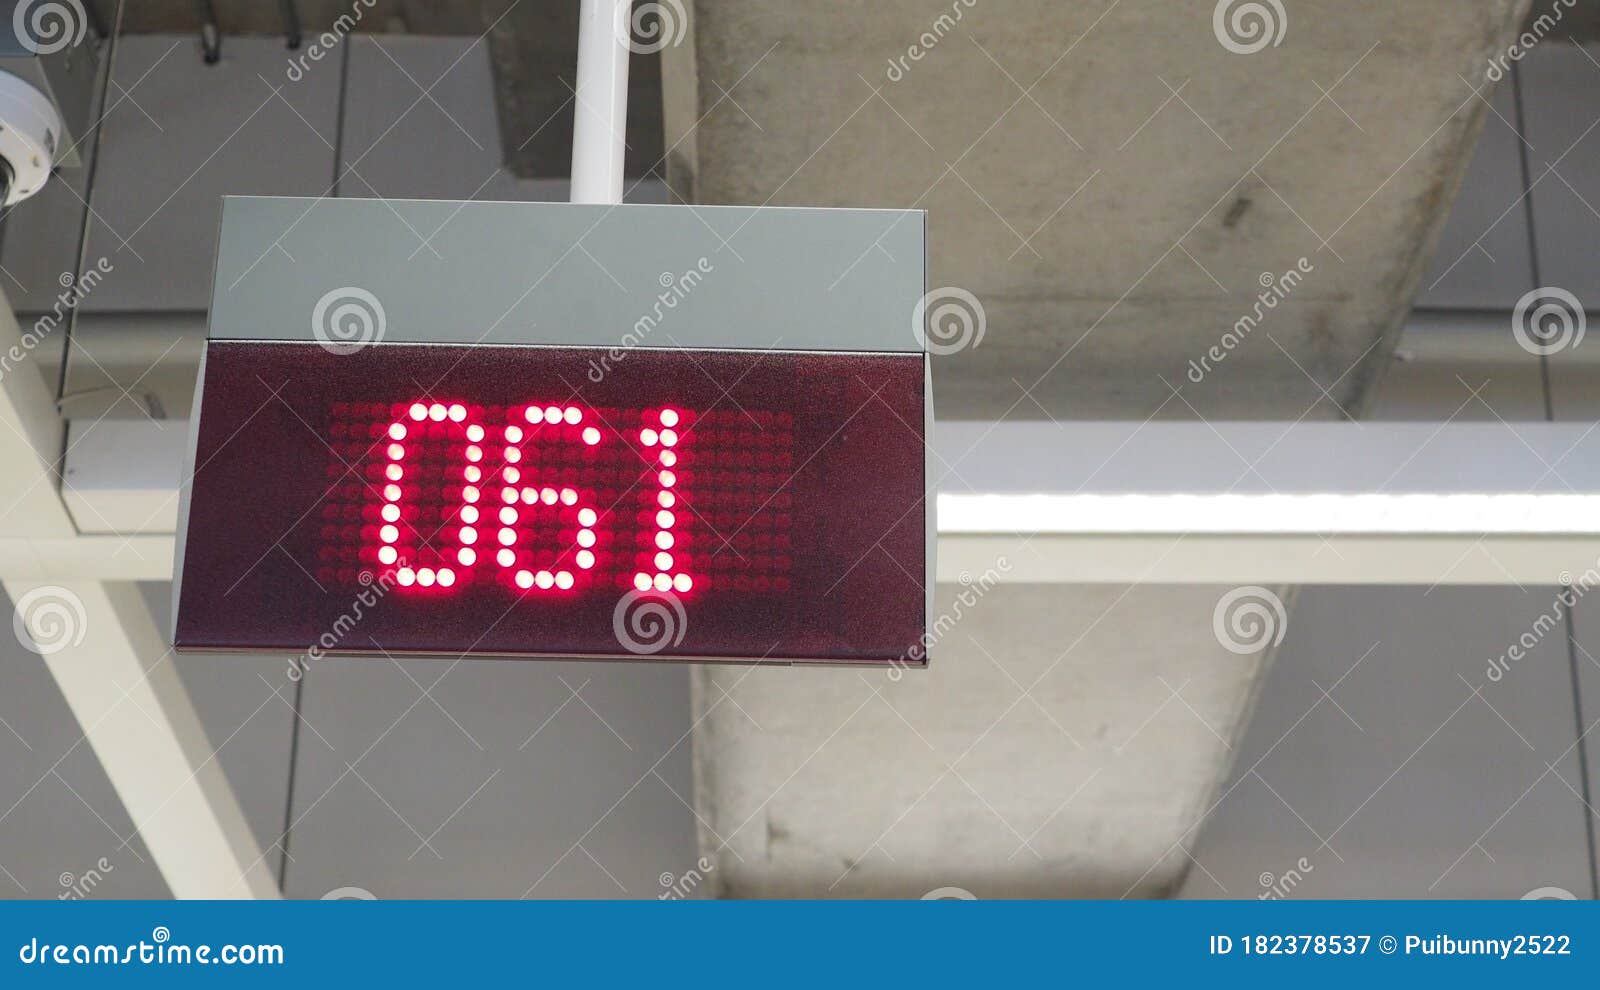 Trafik Forhøre boksning Digital Sign for Queue Counter. Display Board System in LED Light Stock  Image - Image of control, black: 182378537